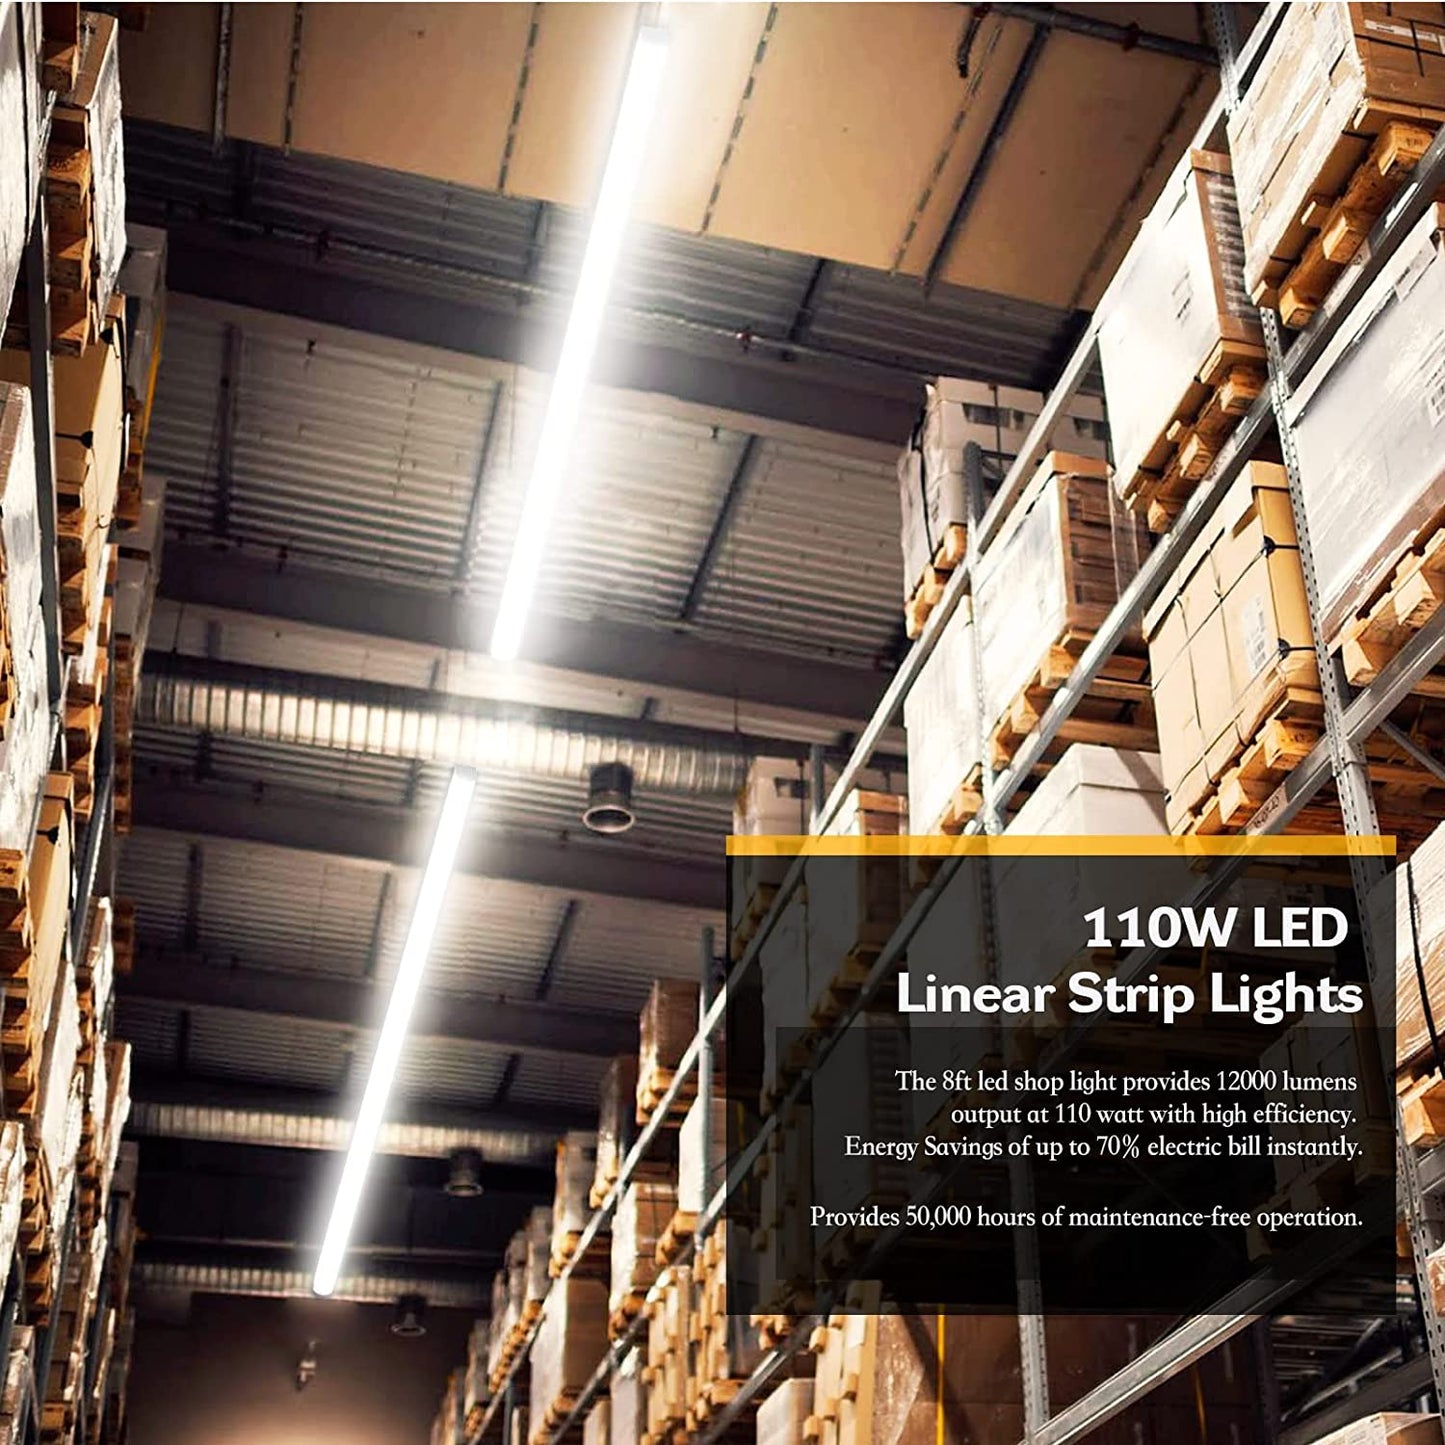 AntLux LED Shop Light 8FT 110W Linear Strip Lights Linkable, 12000 Lumens, 5000K, 8 Foot LED Garage Lights, Surface Mount and Hanging Ceiling Lighting Fixture, 2 Pack